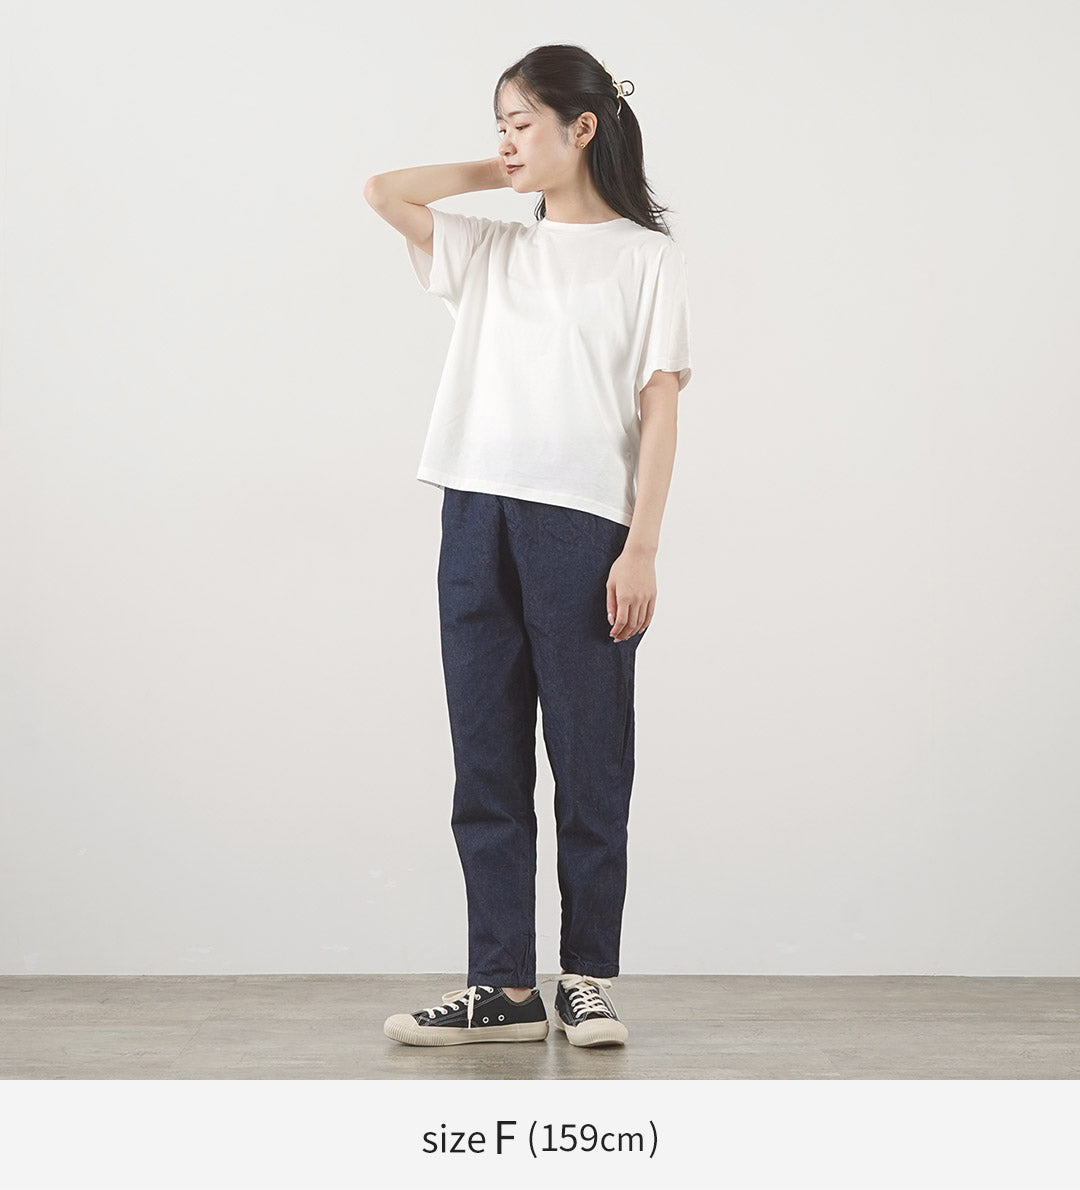 MIDIUMI（ミディウミ） ドルマンベーシック Tシャツ / レディース カットソー 半袖 綿 コットン 無地 日本製 Dolman Basic T Shirt